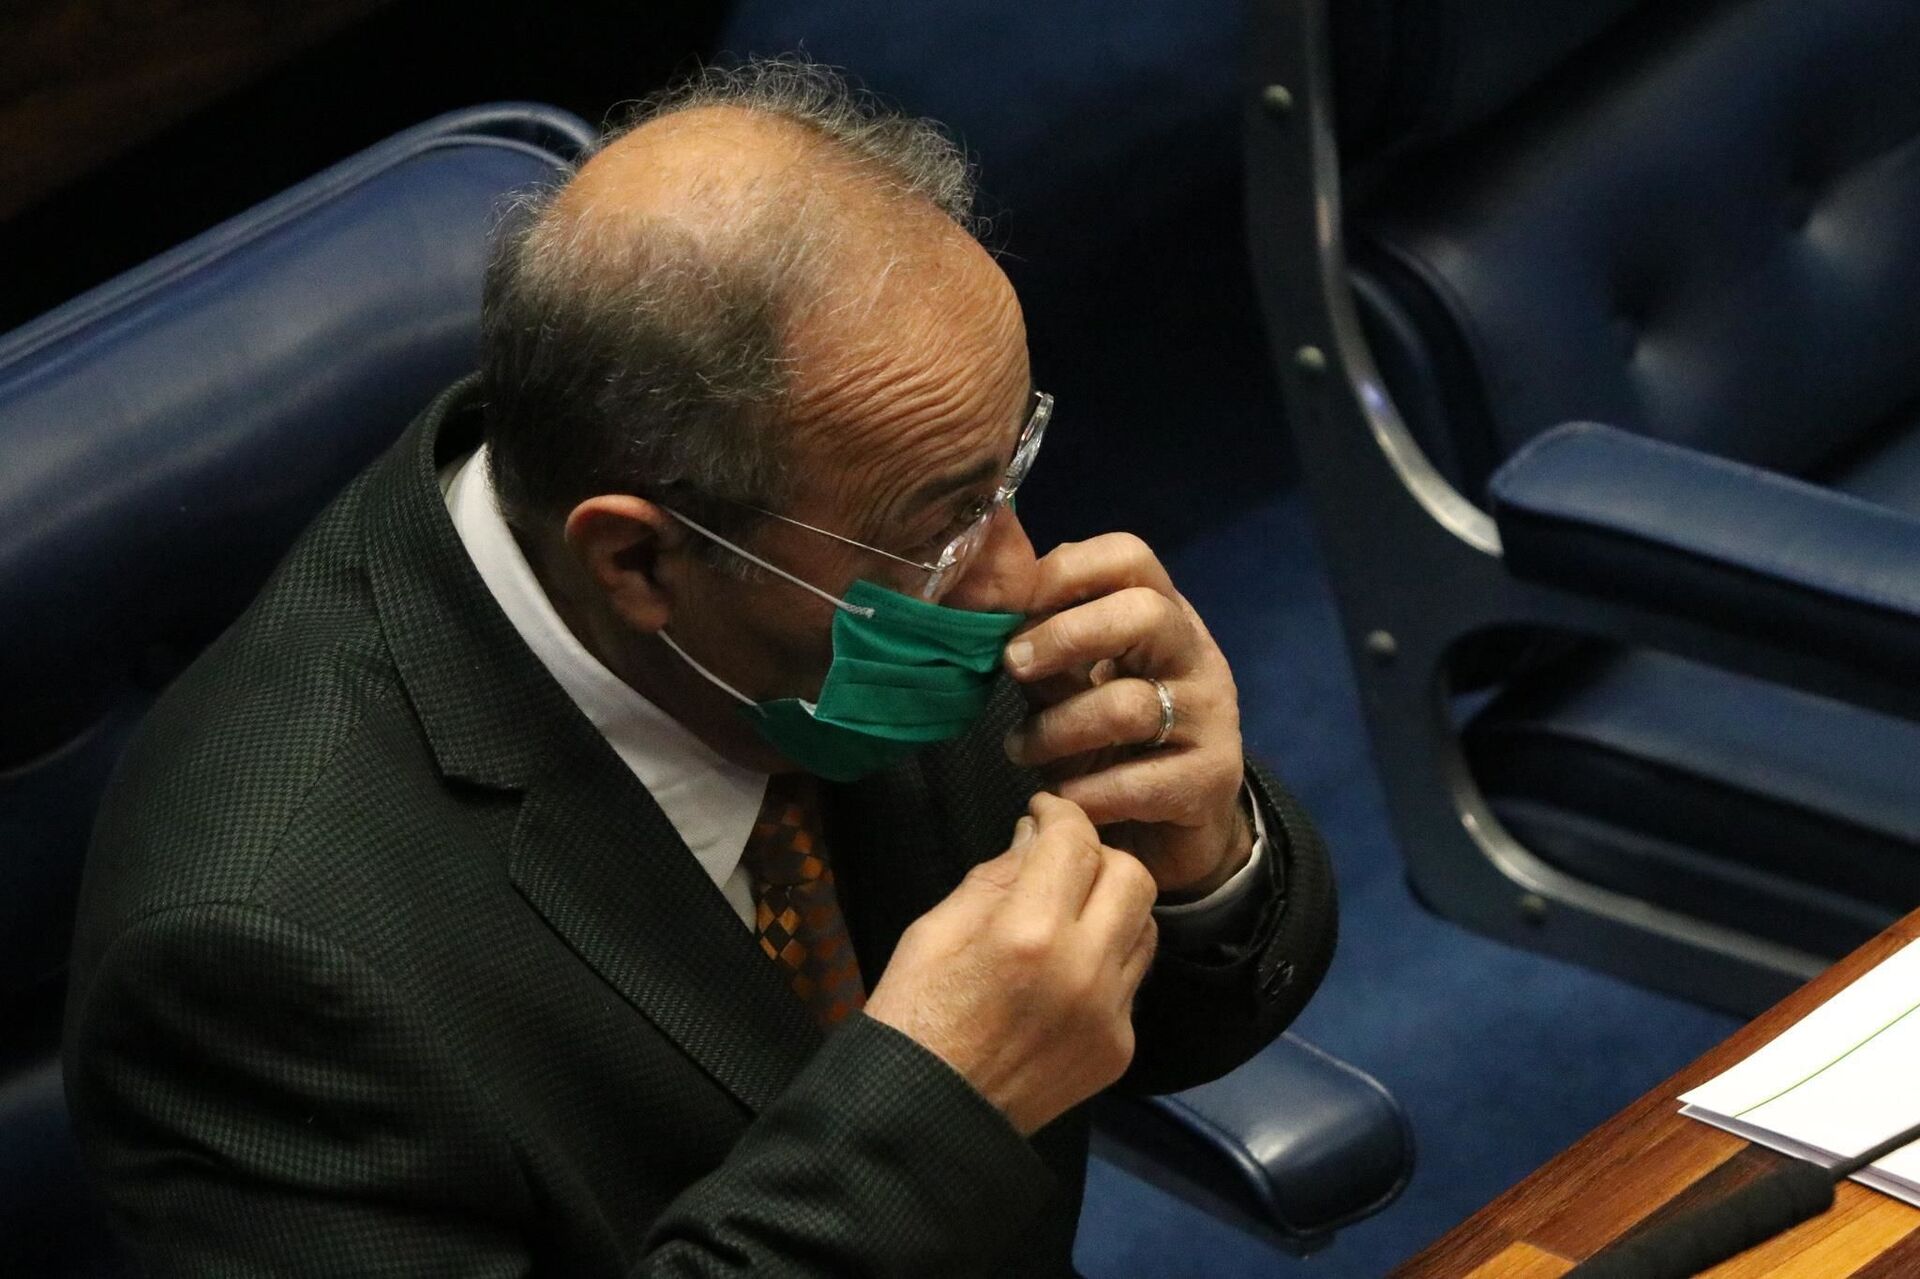 Brasil: parlamentar flagrado com dinheiro na cueca deve reassumir mandato - Sputnik Brasil, 1920, 18.02.2021